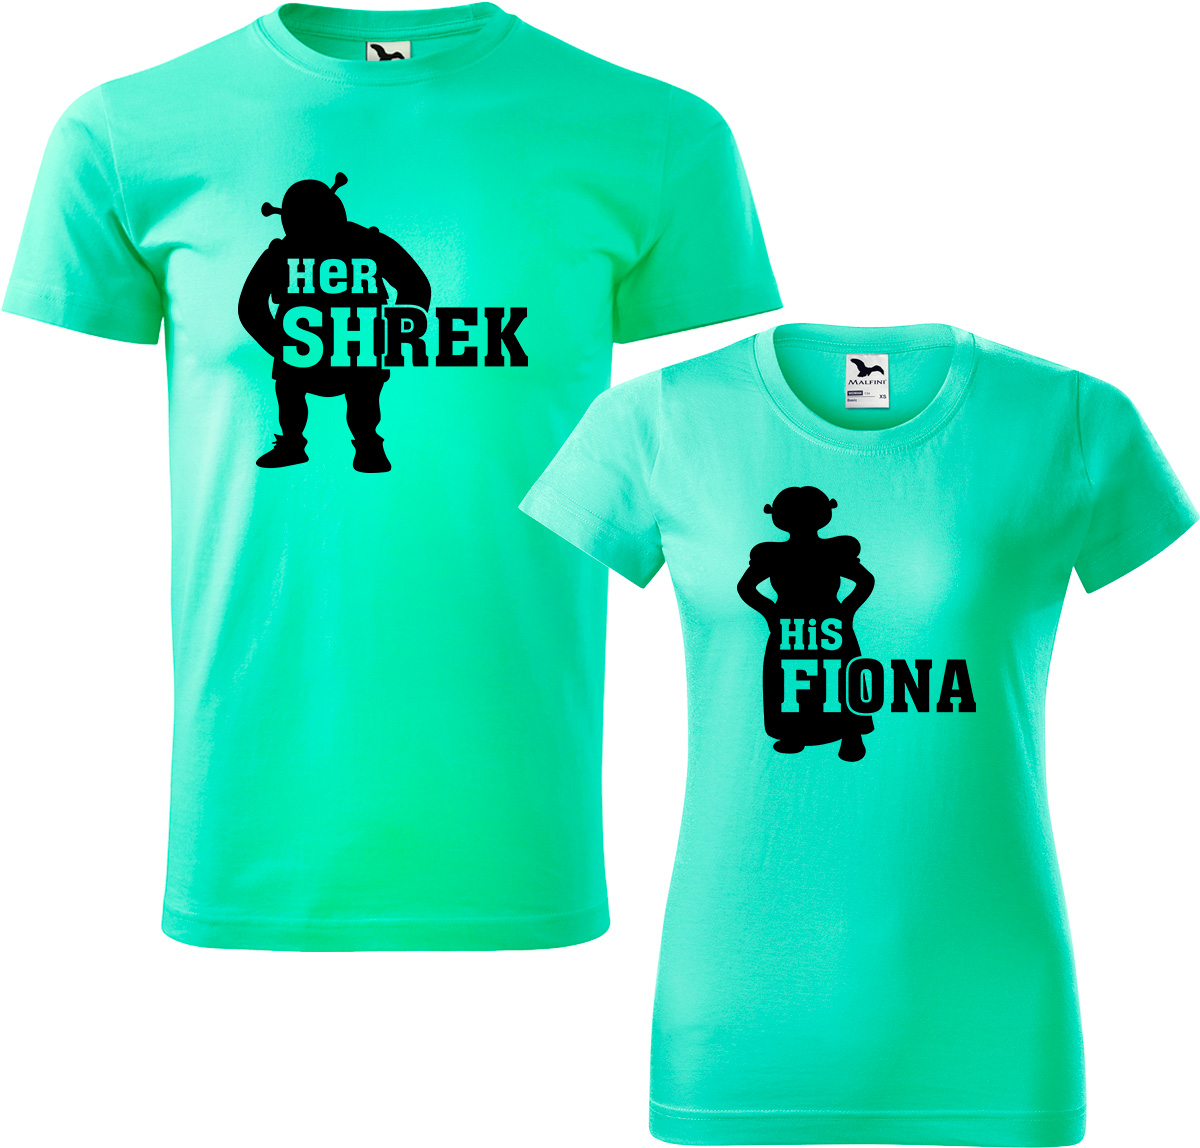 Trička pro páry - Shrek a Fiona Barva: Mátová (95), Velikost dámské tričko: 3XL, Velikost pánské tričko: 4XL